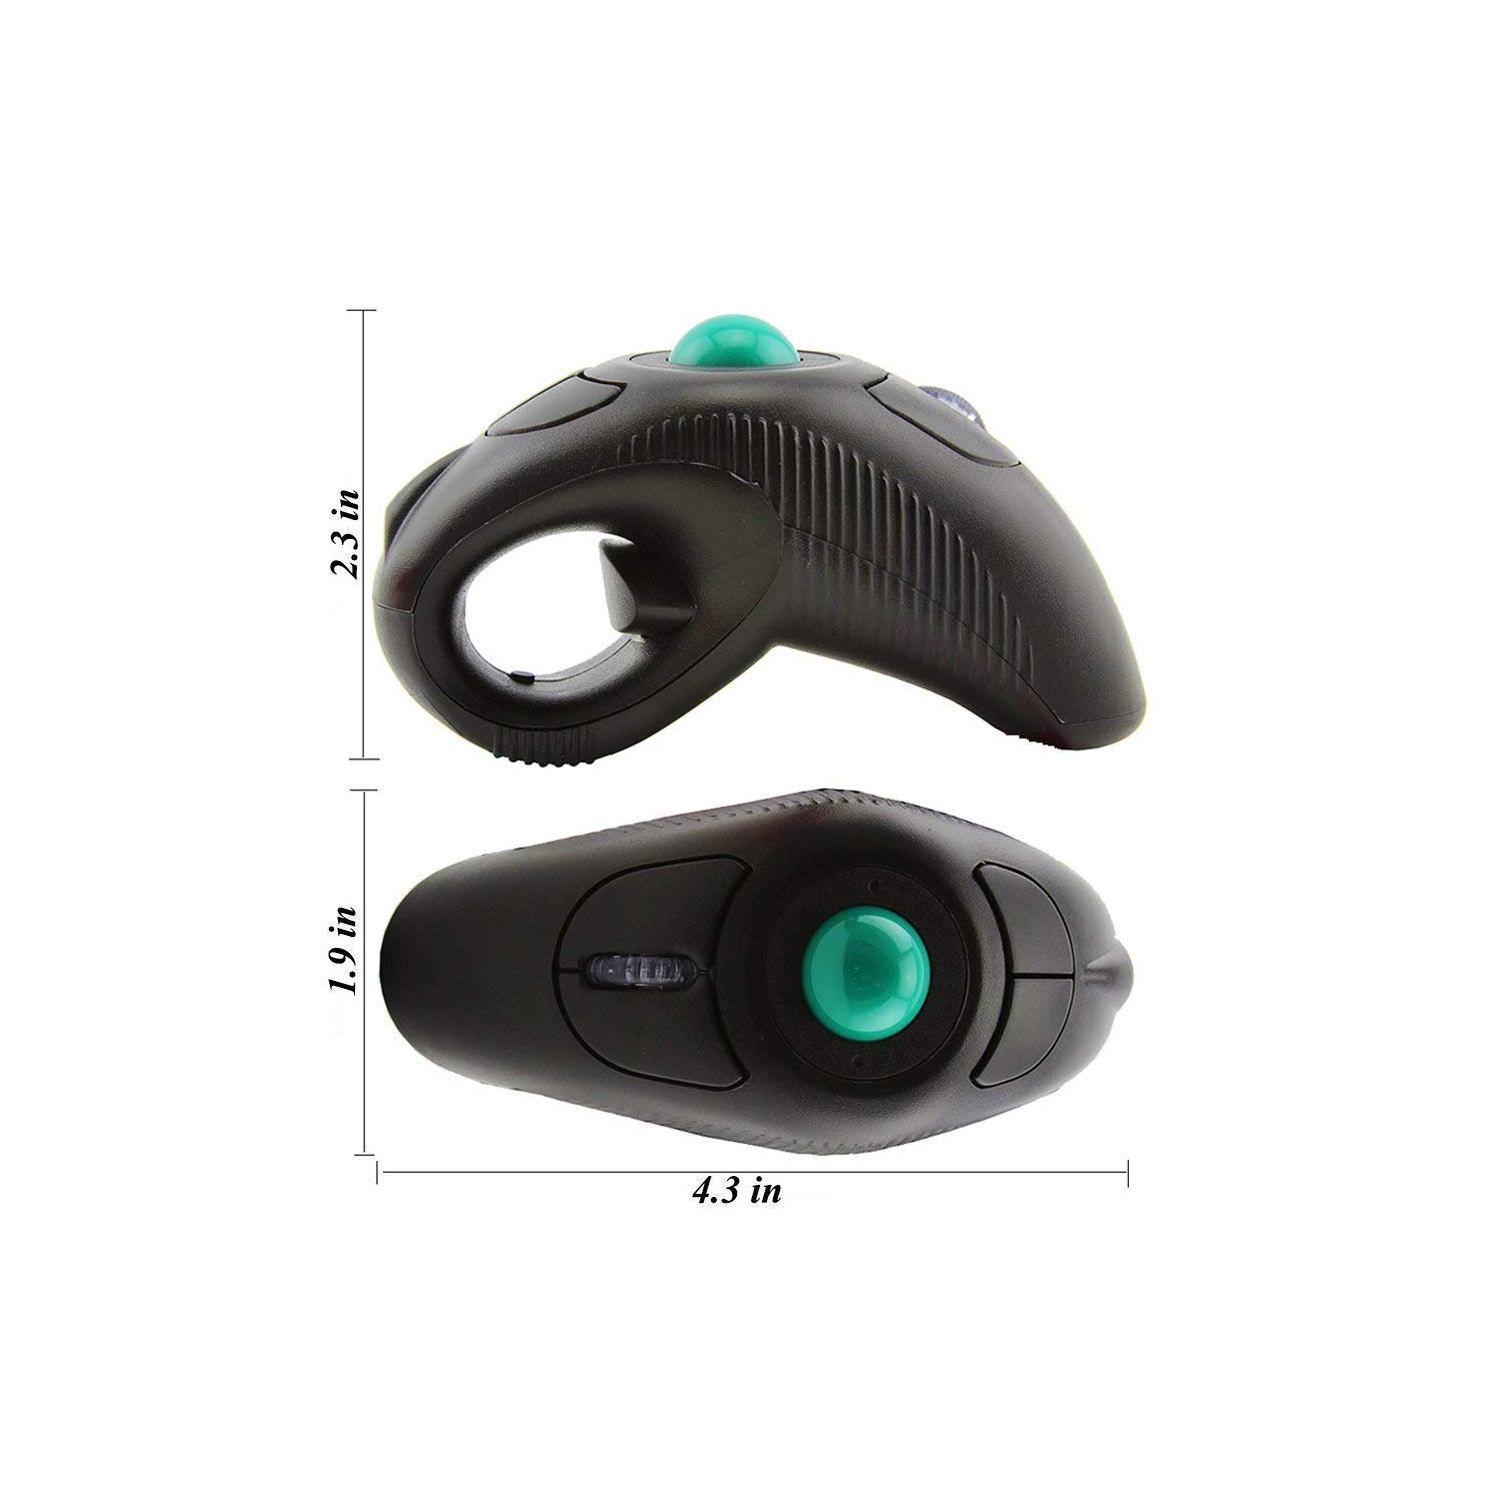 EIGIIS 2.4G Ergonomic Trackball Handheld Finger USB Mouse Wireless